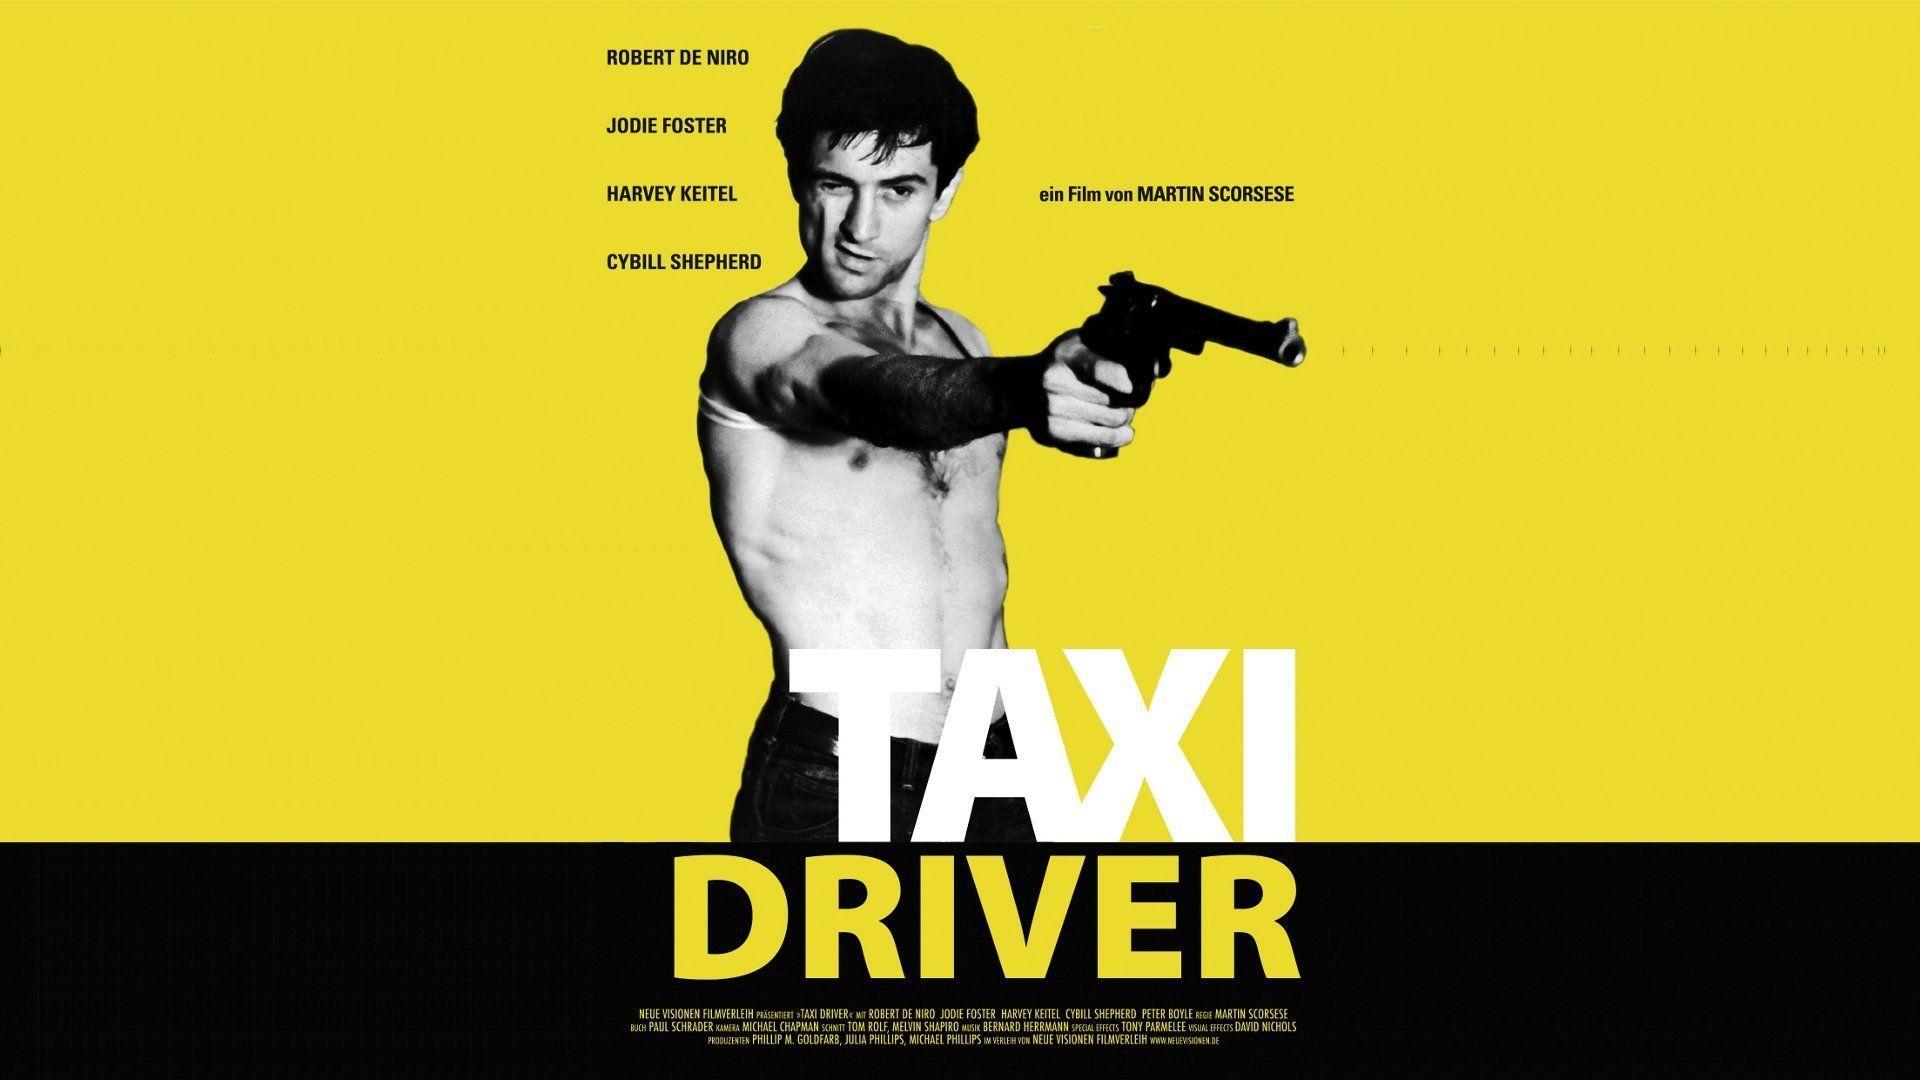 Robert de Niro Taxi Driver Wallpaper